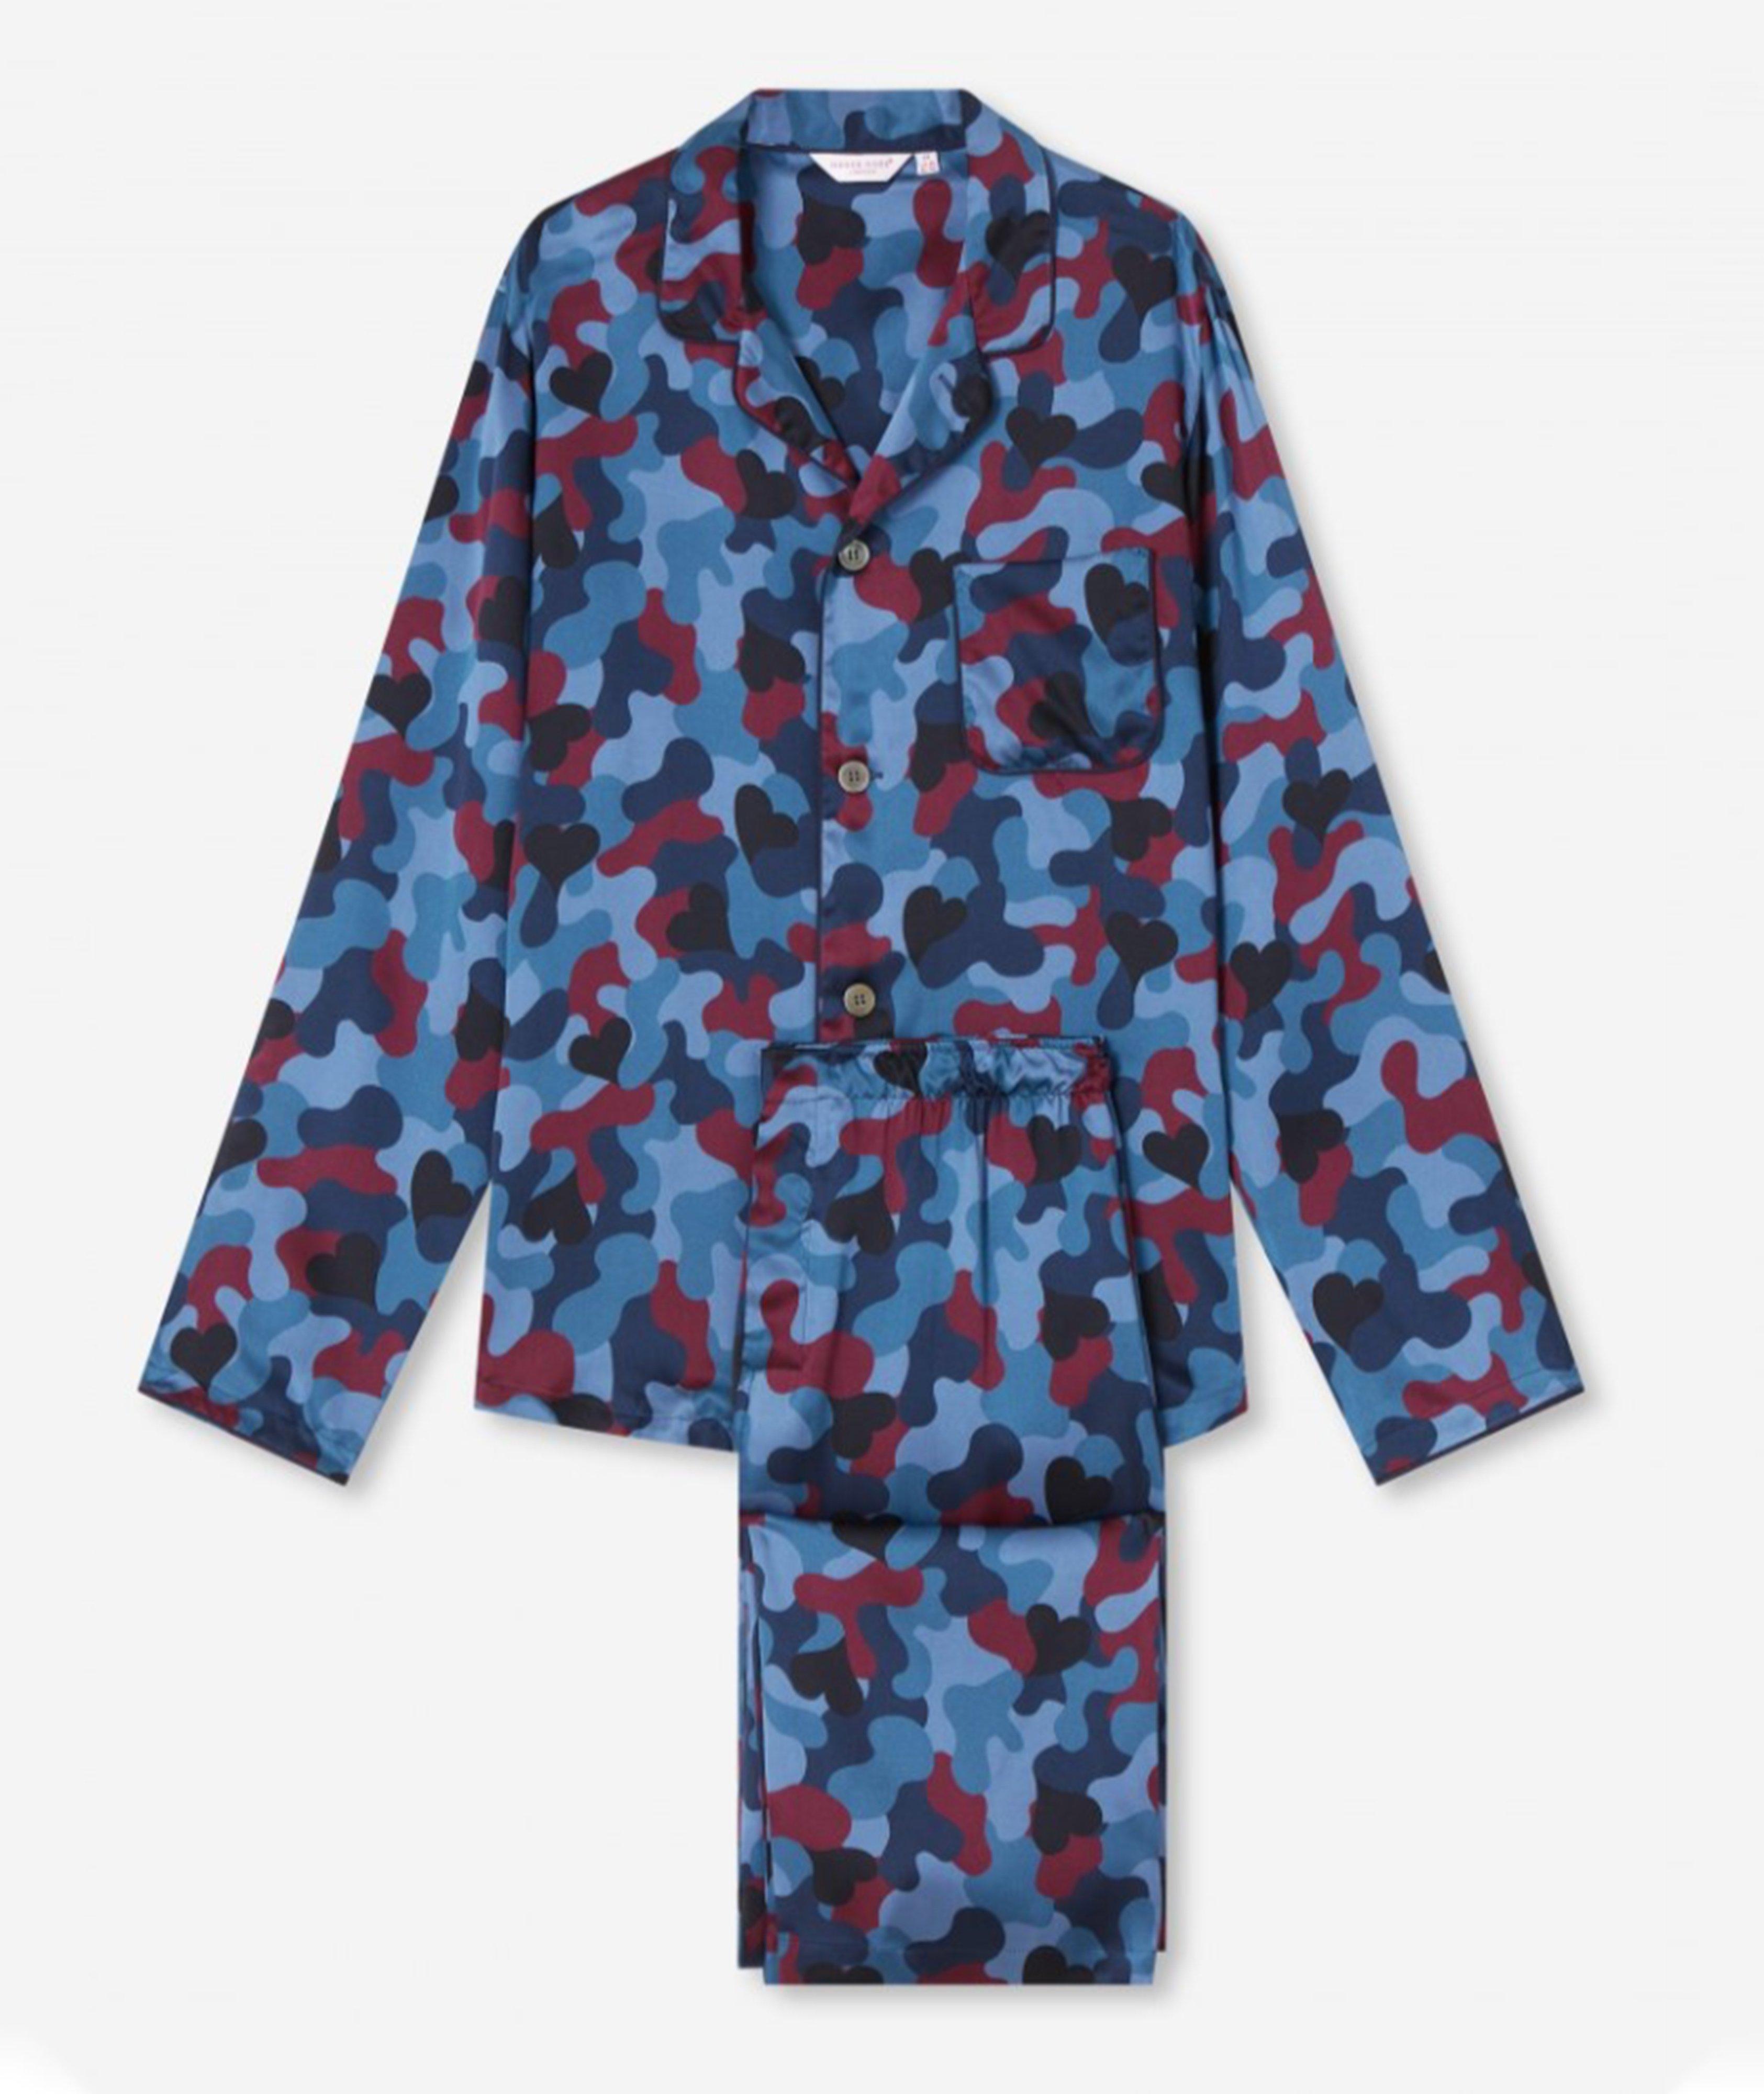 Pyjama en soie à motif camouflage image 0